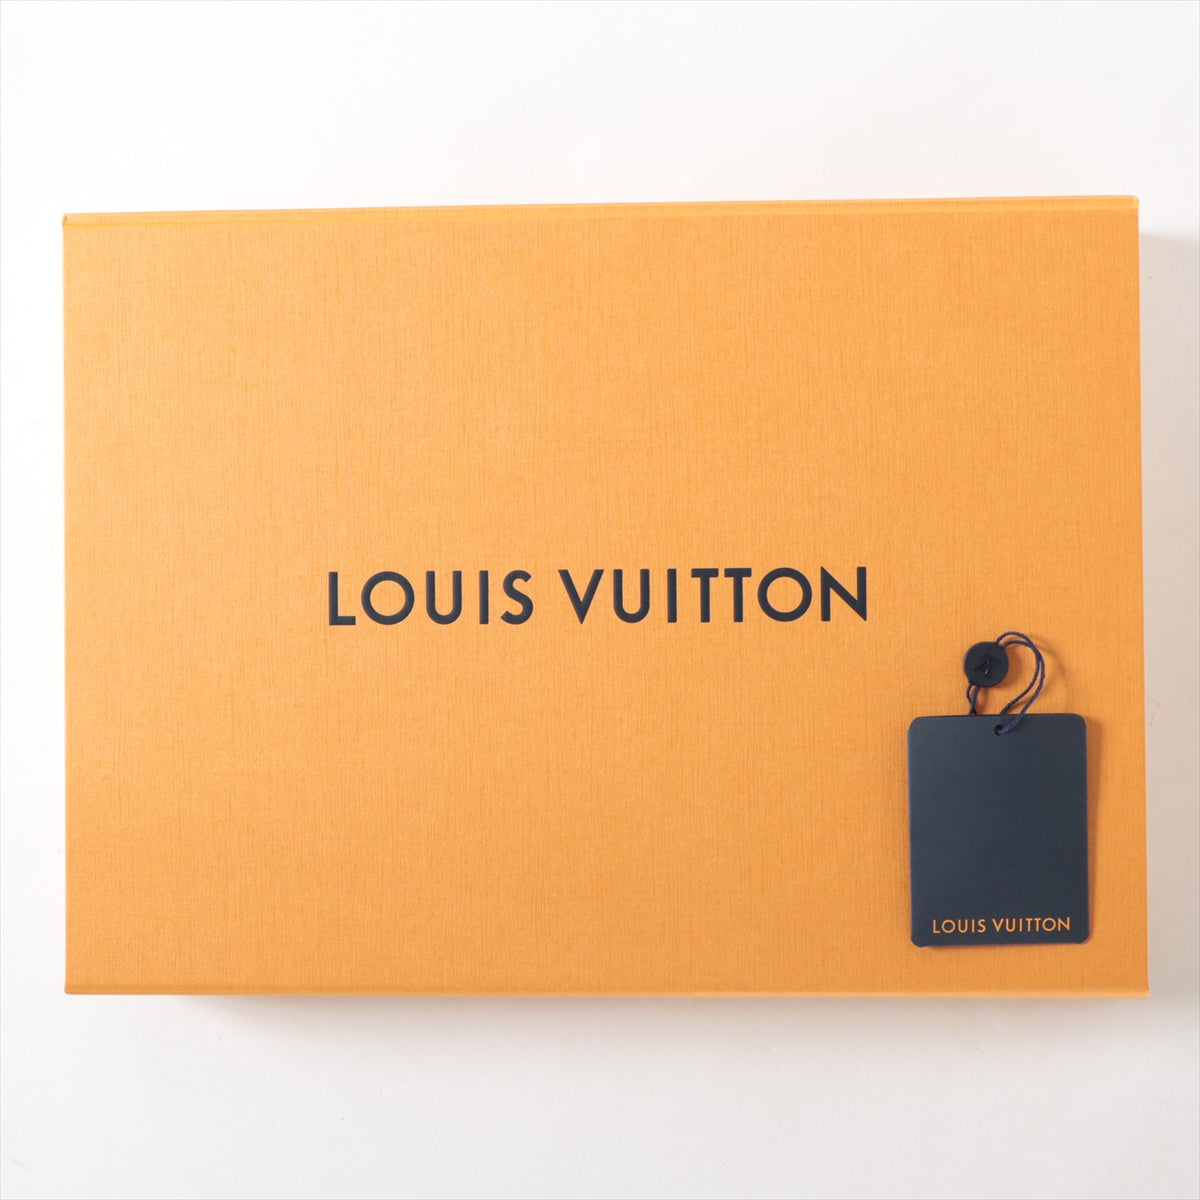 Louis Vuitton 23AW Cotton  L Men Multicolor RM232 Printed Cotton Shoes Damier Check Pattern